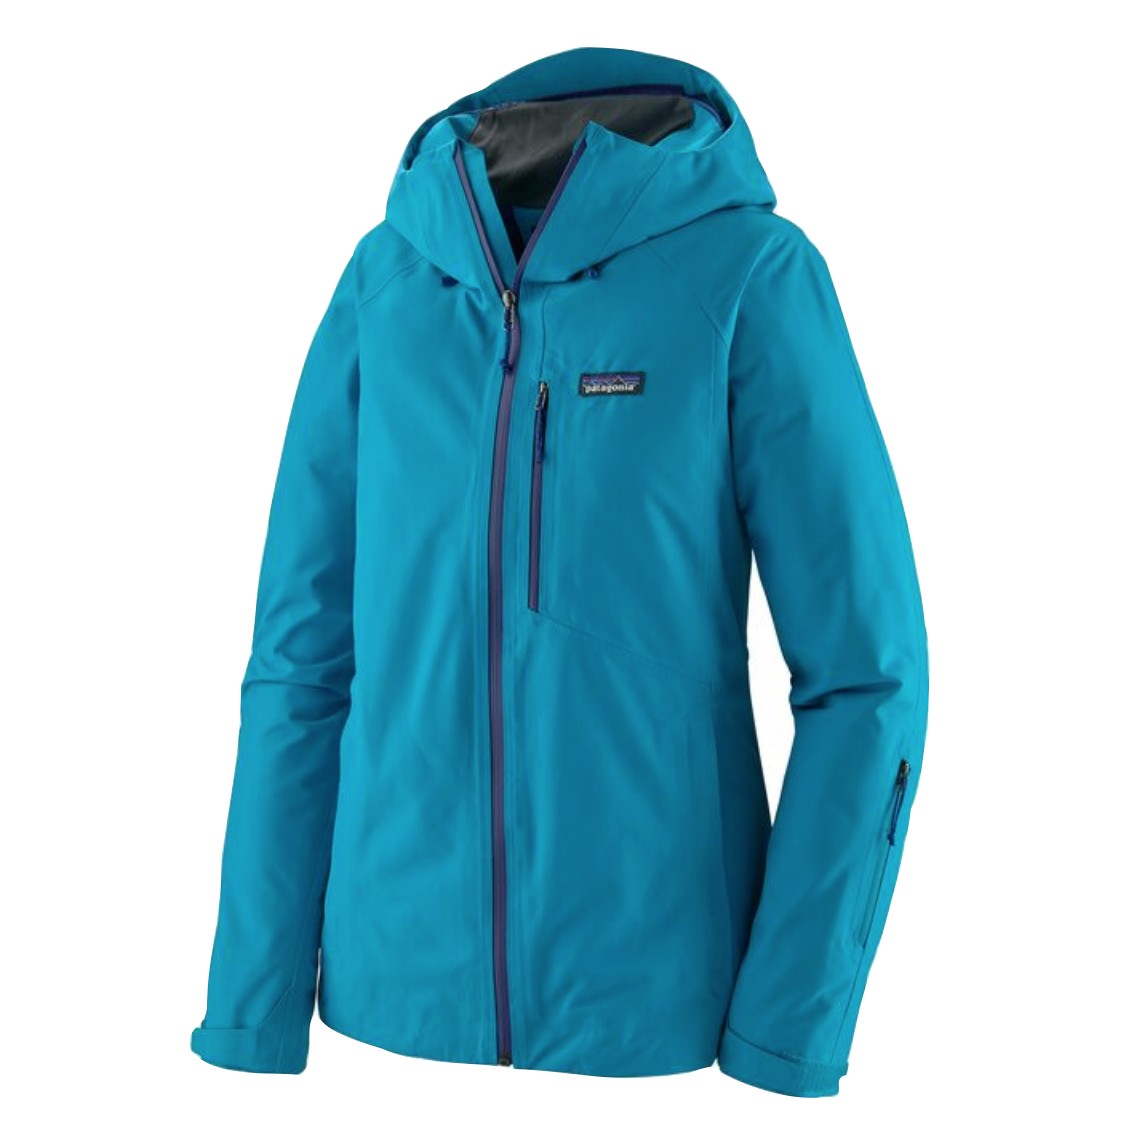 patagonia powder bowl jacket for women ski jacket review